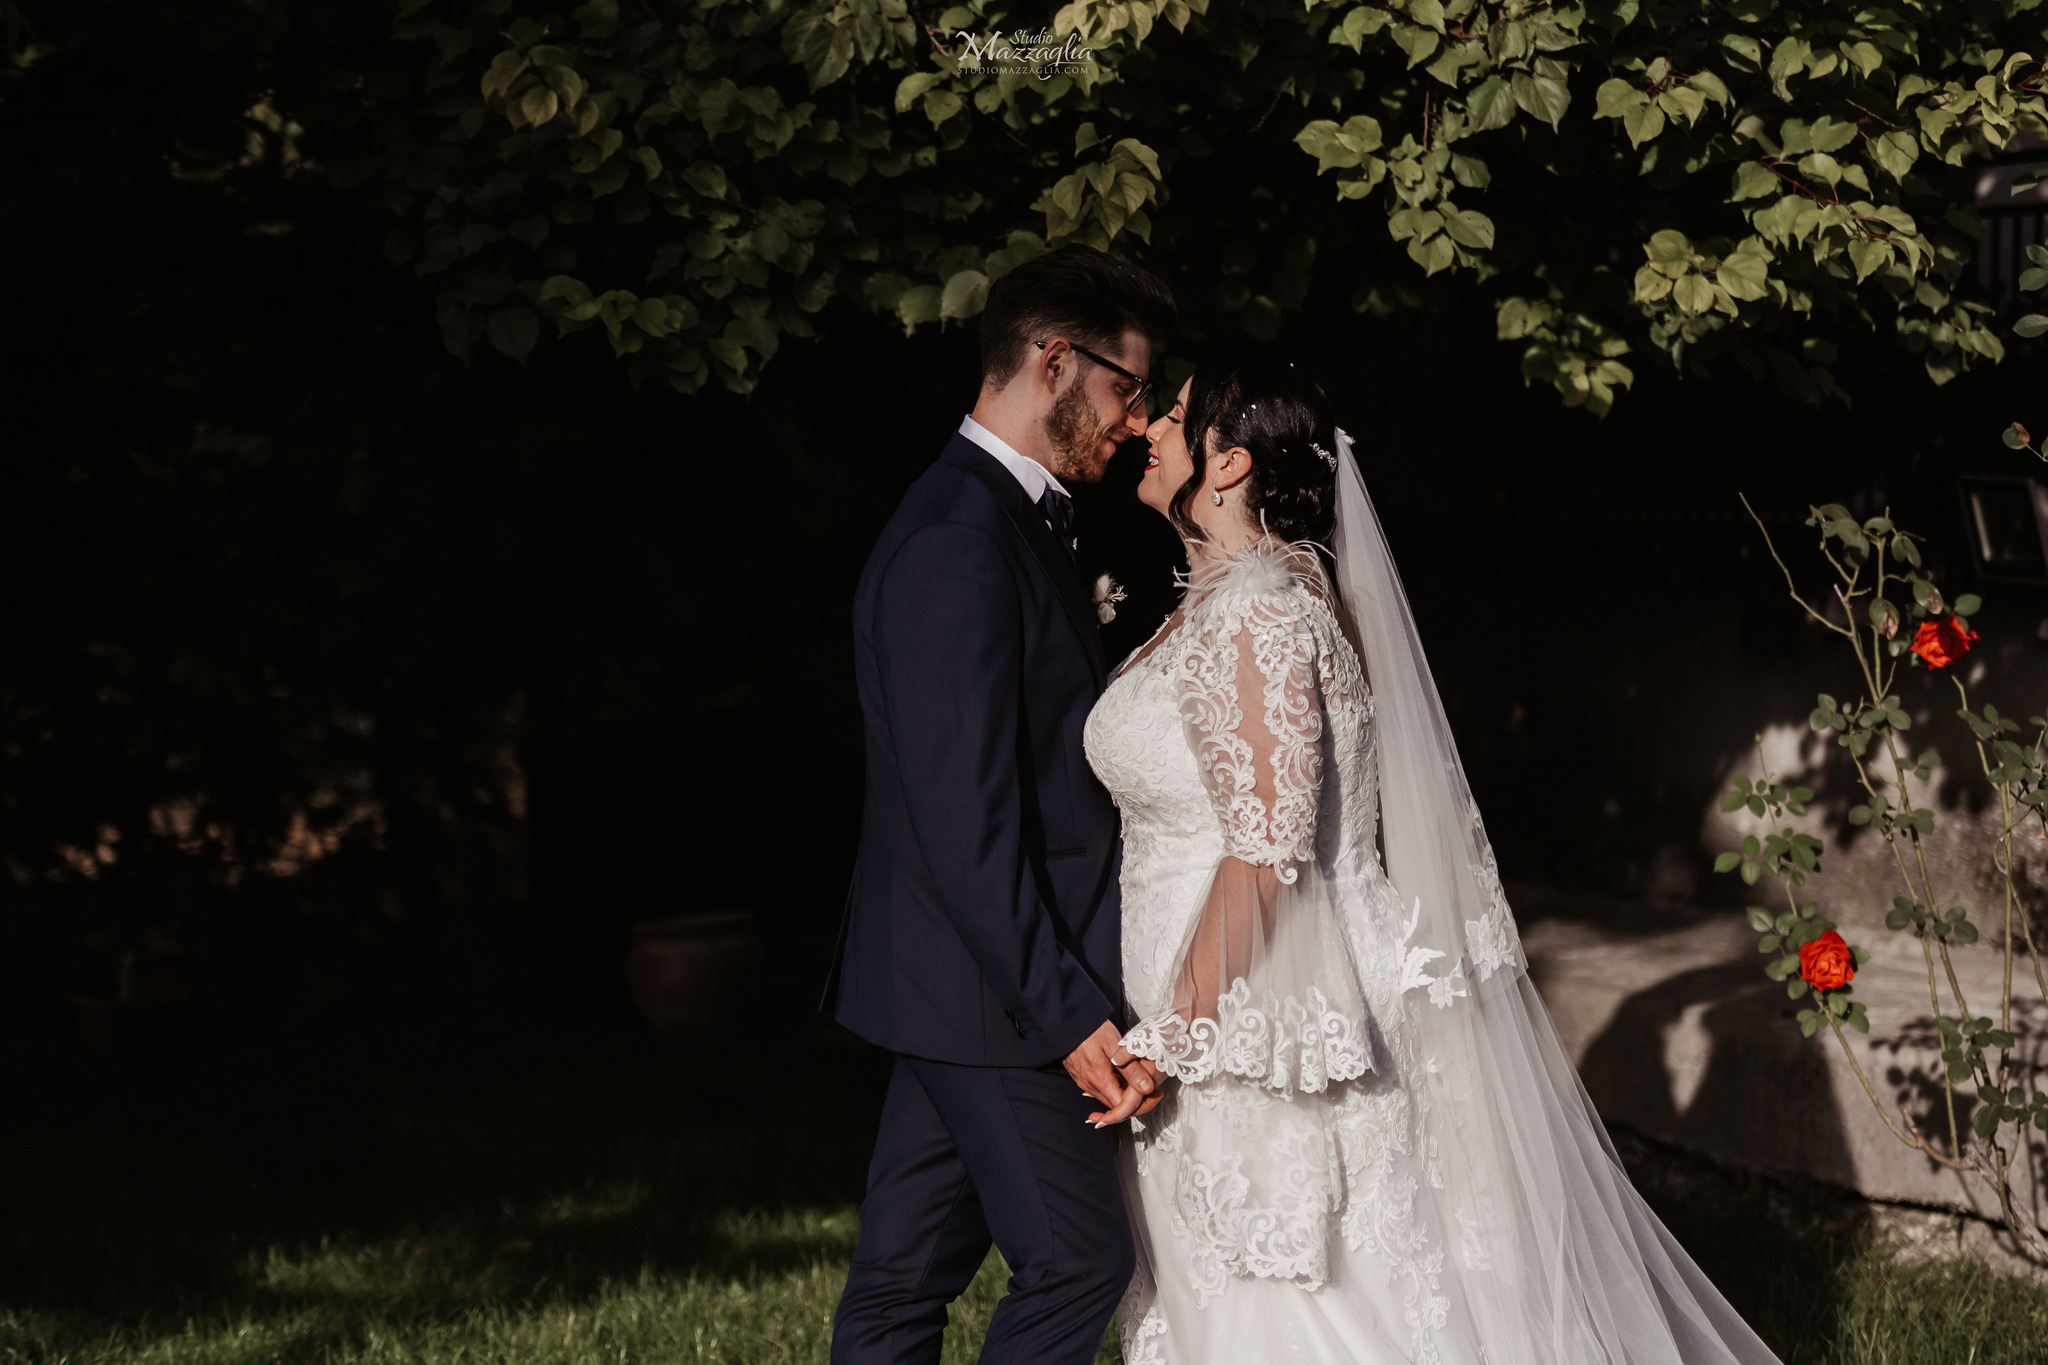 Carmelo Mazzaglia fotografo matrimonio Palermo